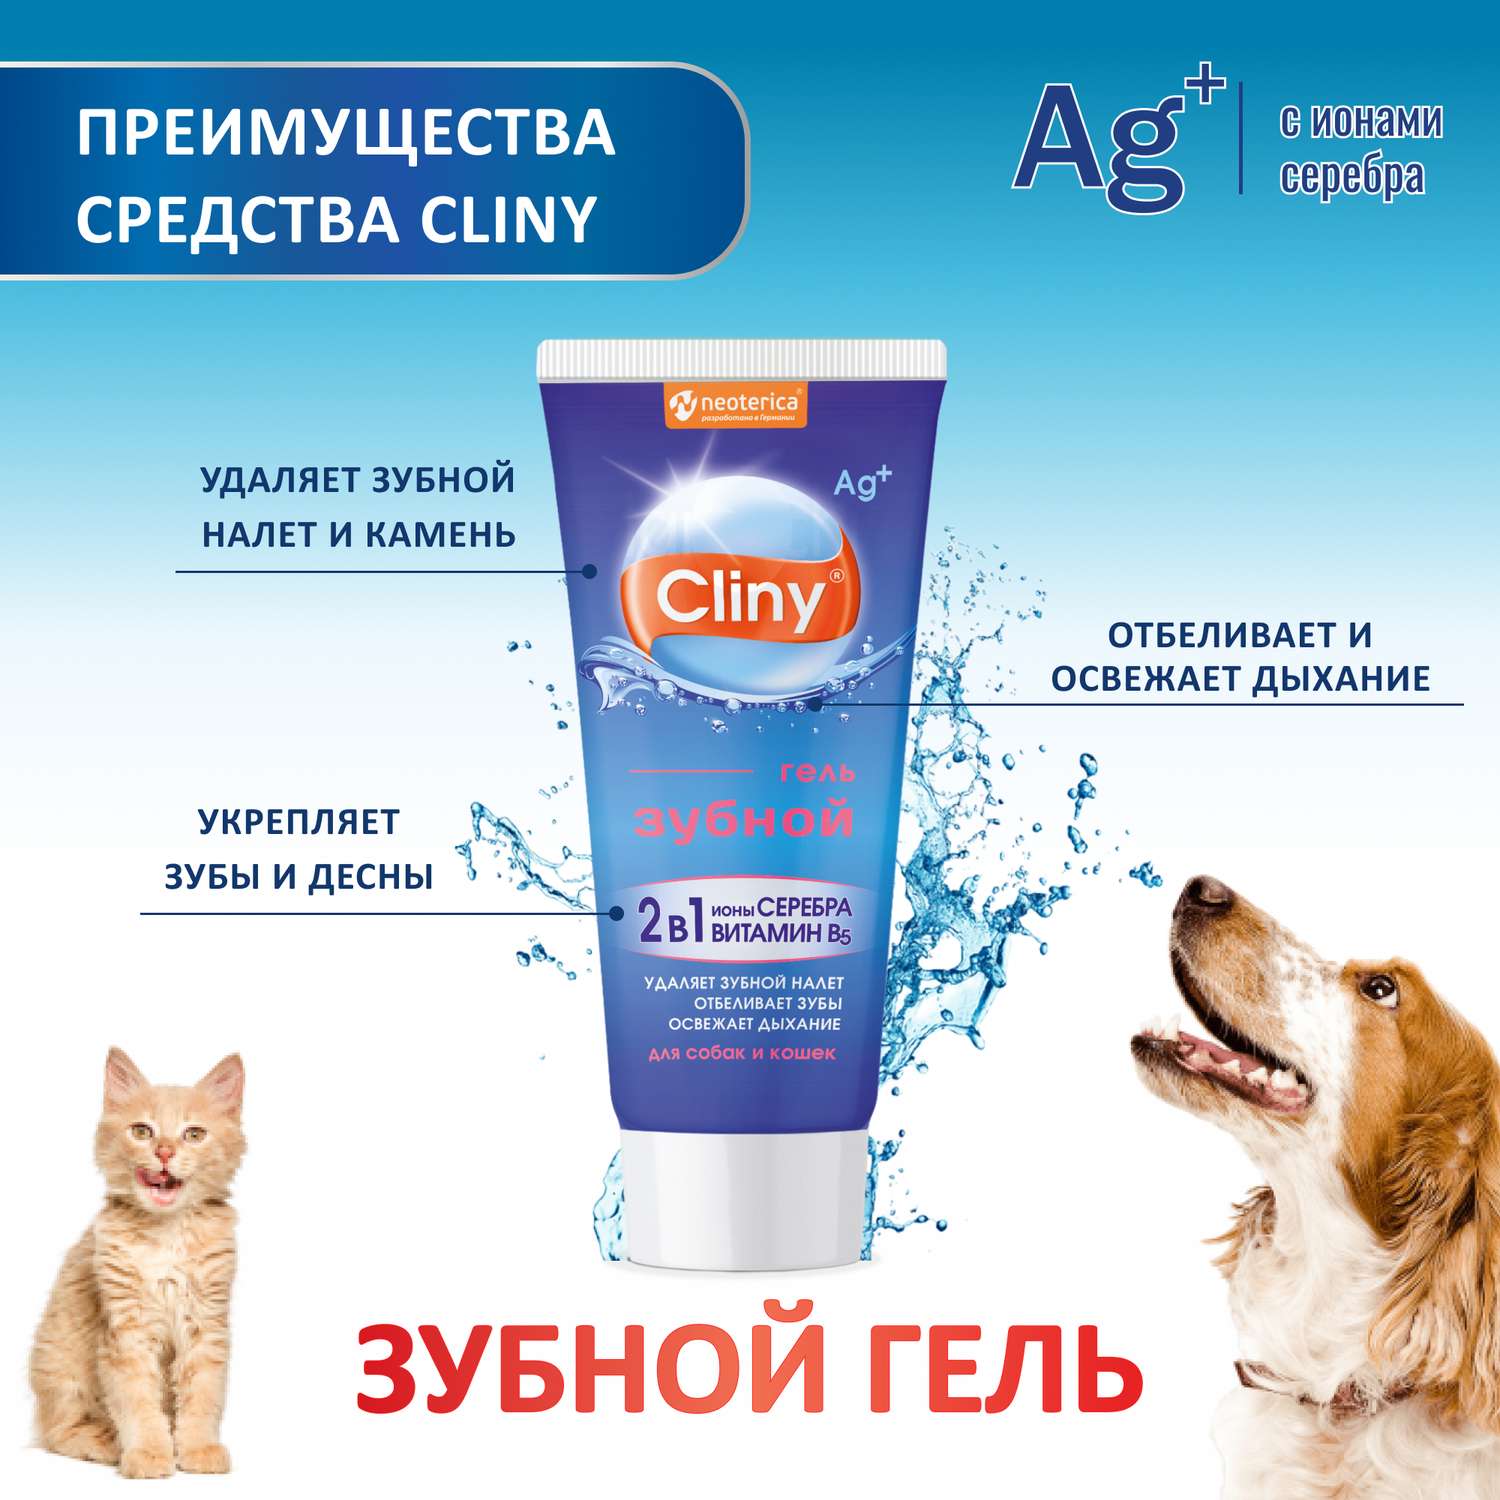 Гель зубной гель для кошек и собак Cliny 75мл 53260 - фото 2